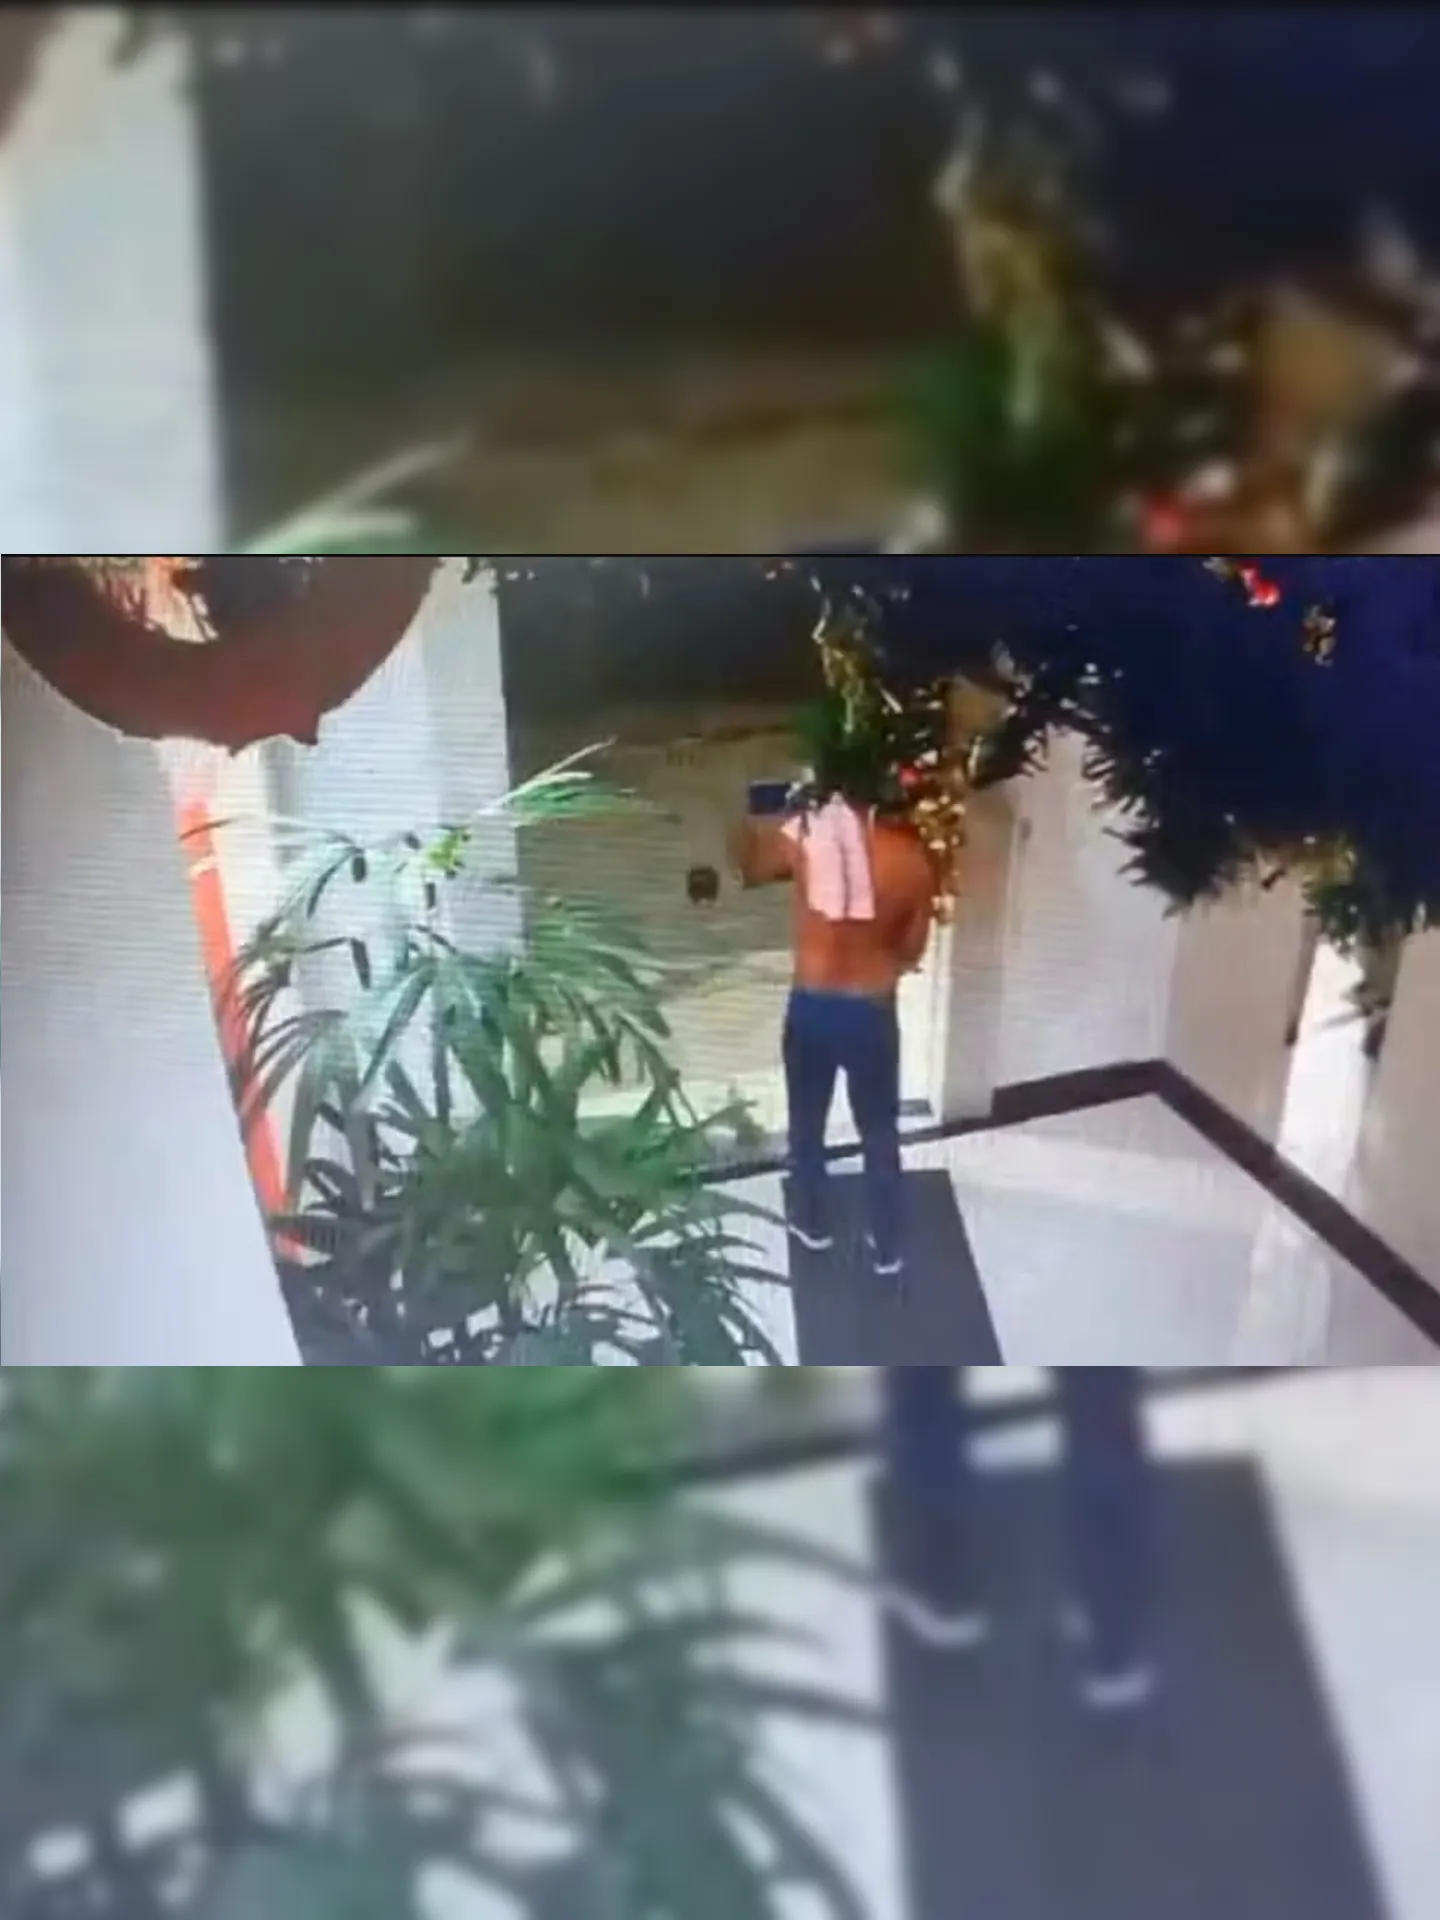 Homem invadiu prédio em Santa Teresa pela porta da frente